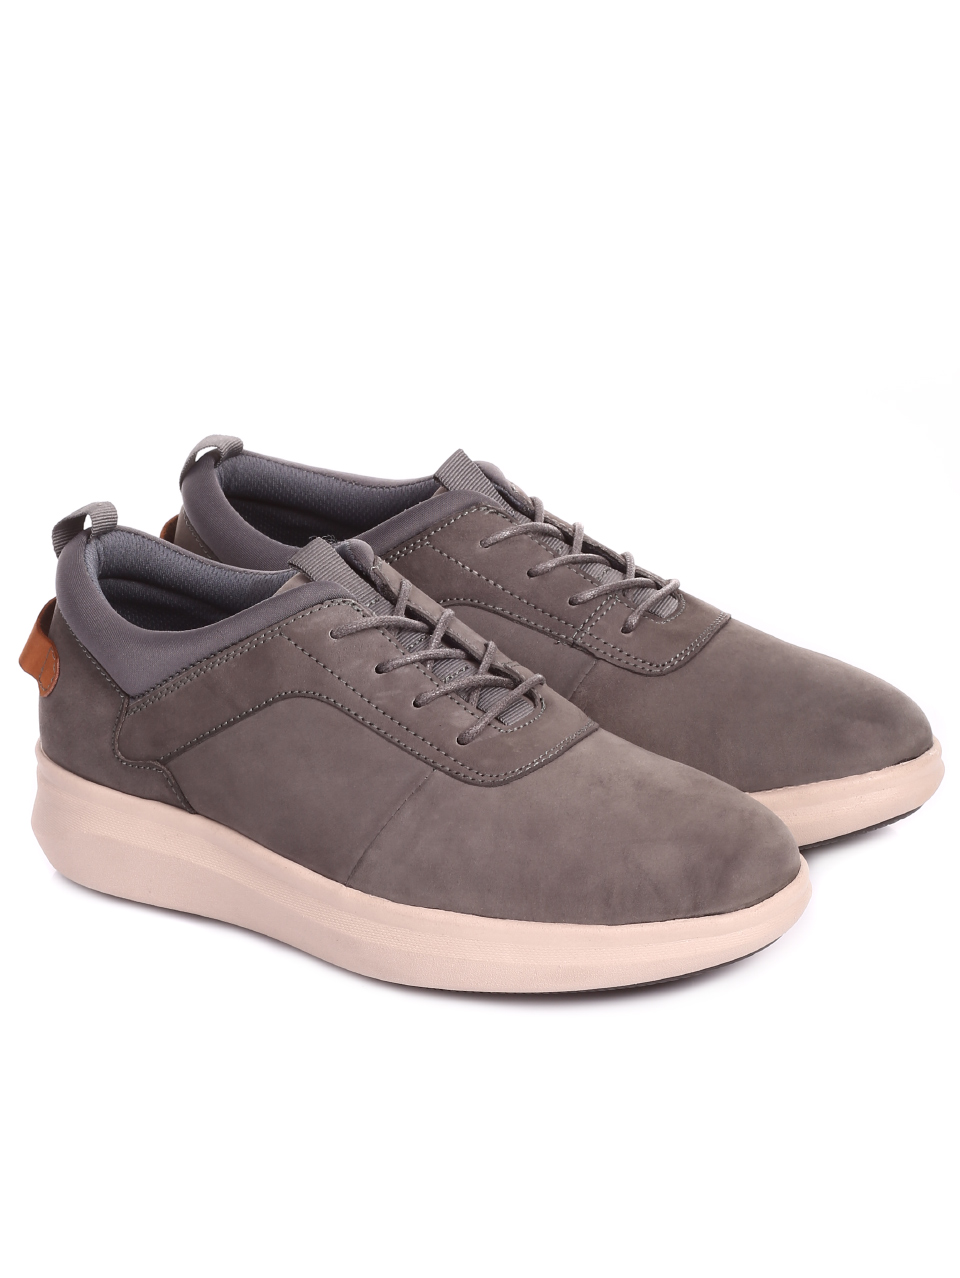 Ежедневни мъжки обувки от естествен набук 7X-20249 grey